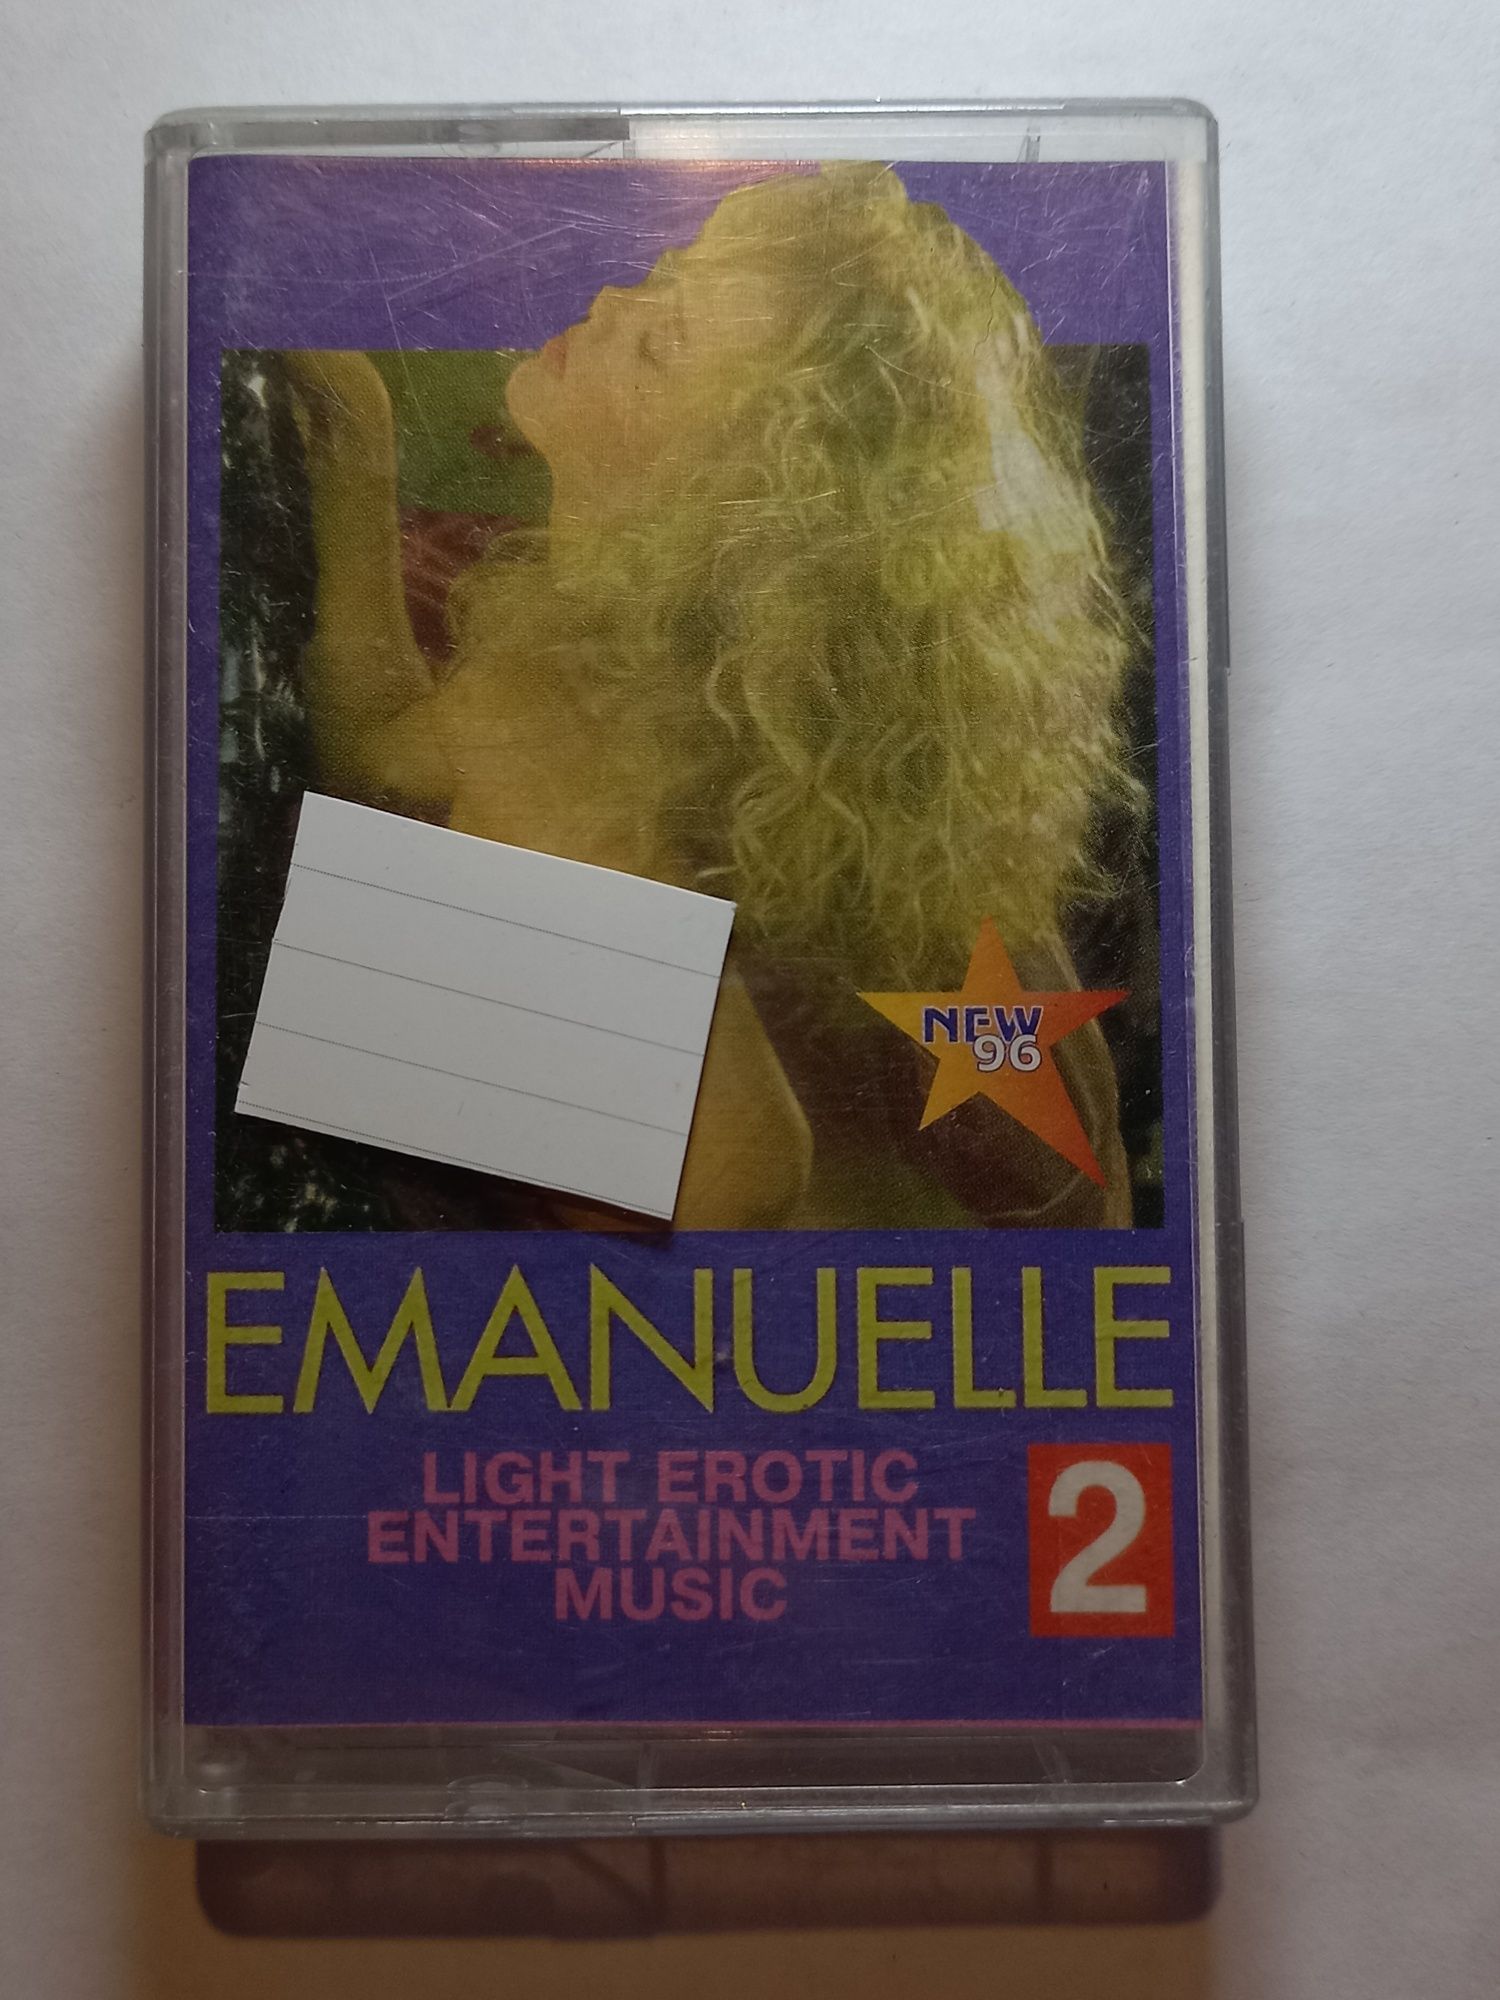 Аудиокассета Emmanuel романтическая музыка касета 90-е 00-е dvm винтаж